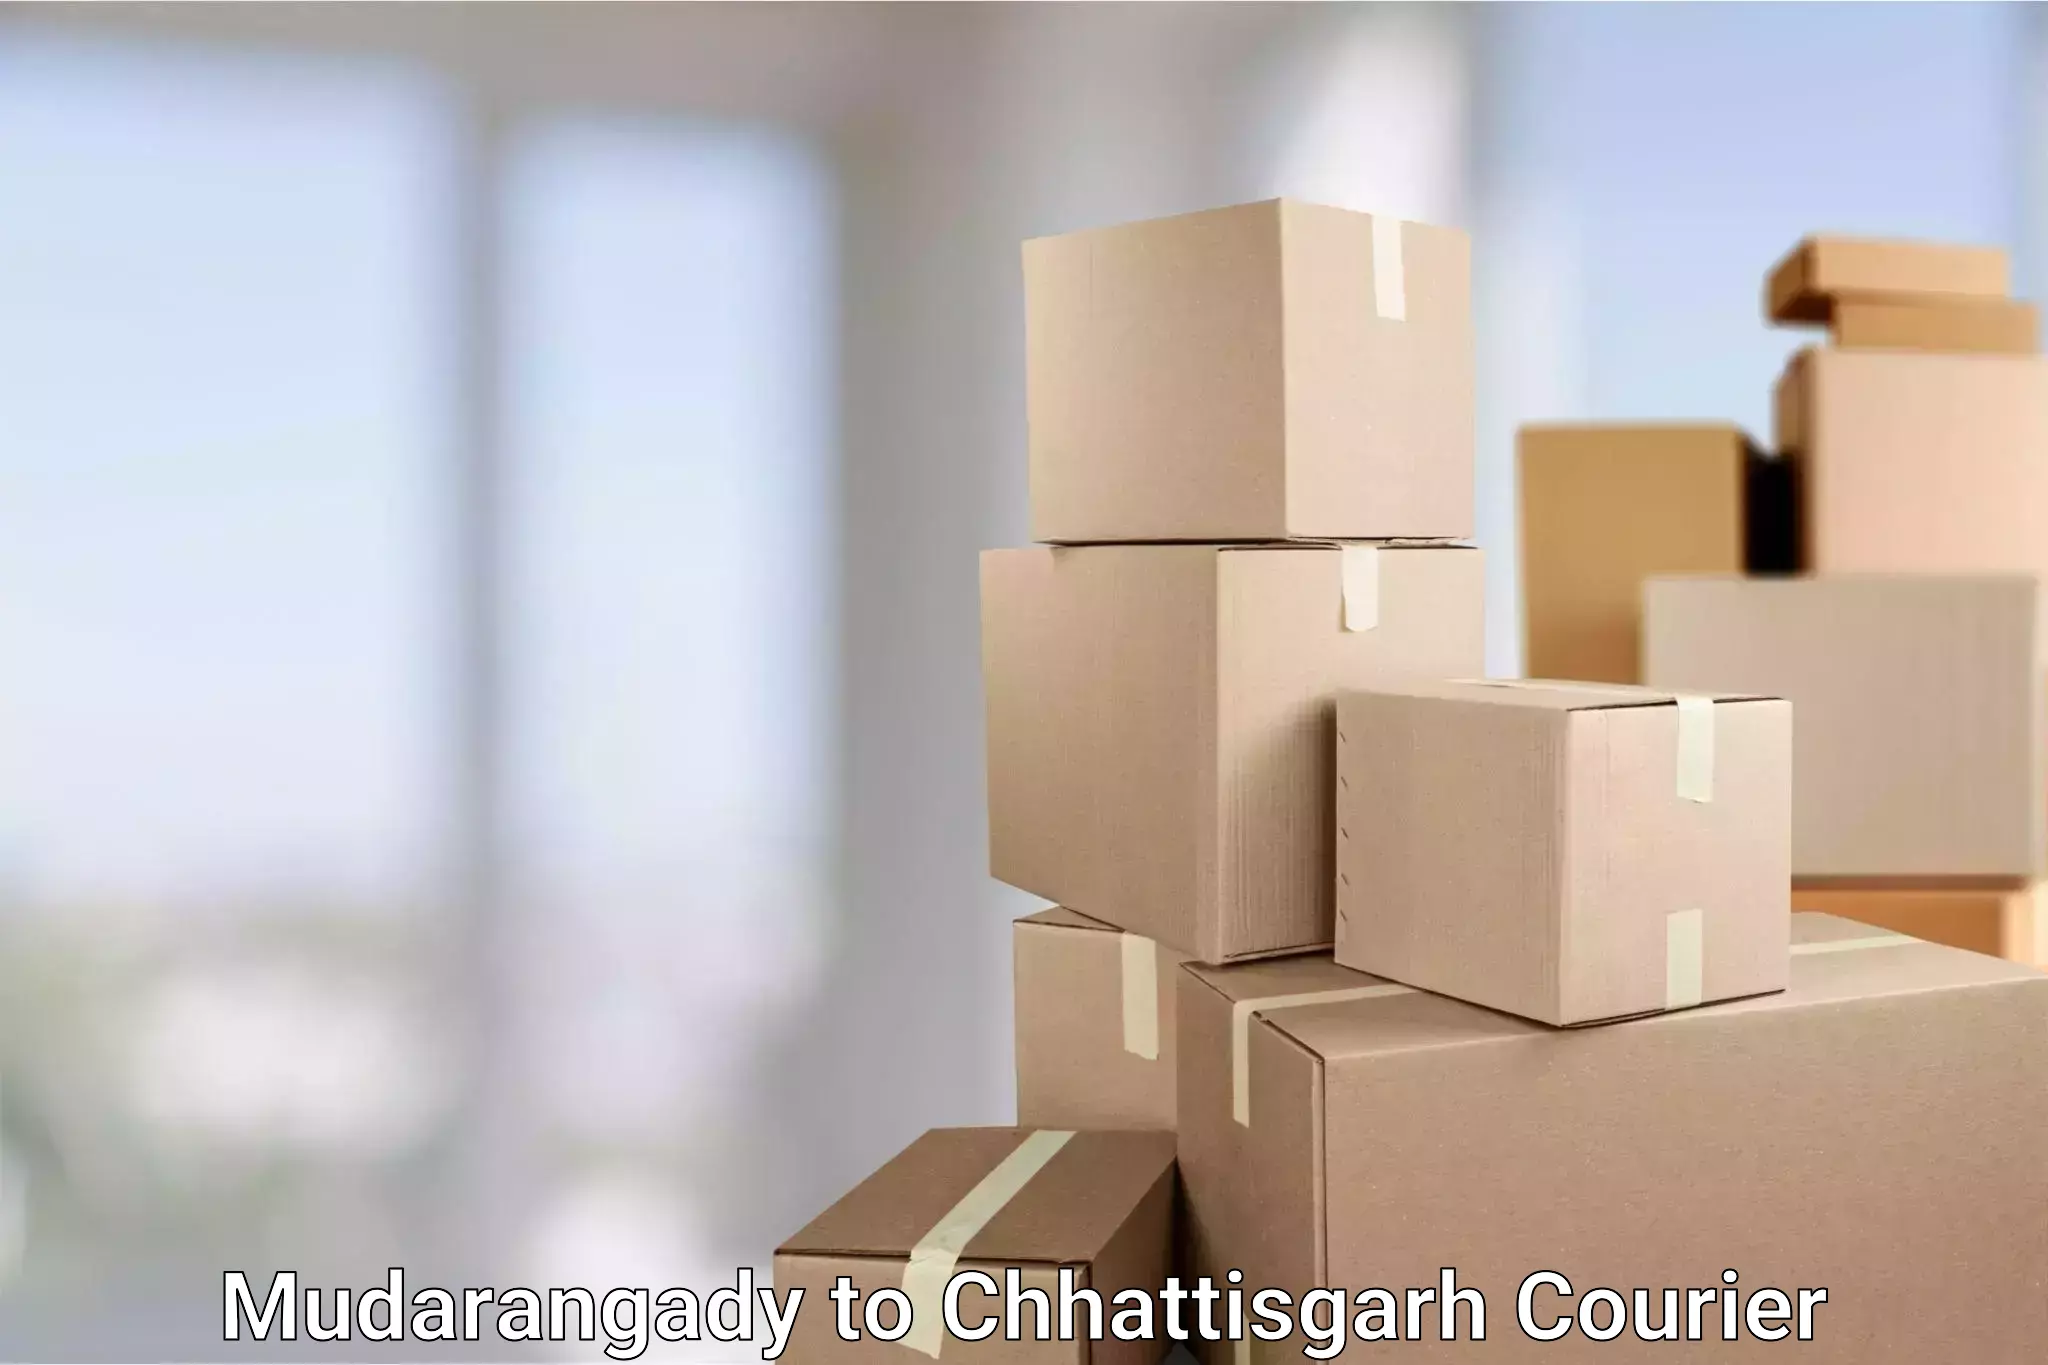 State-of-the-art courier technology Mudarangady to Pandariya